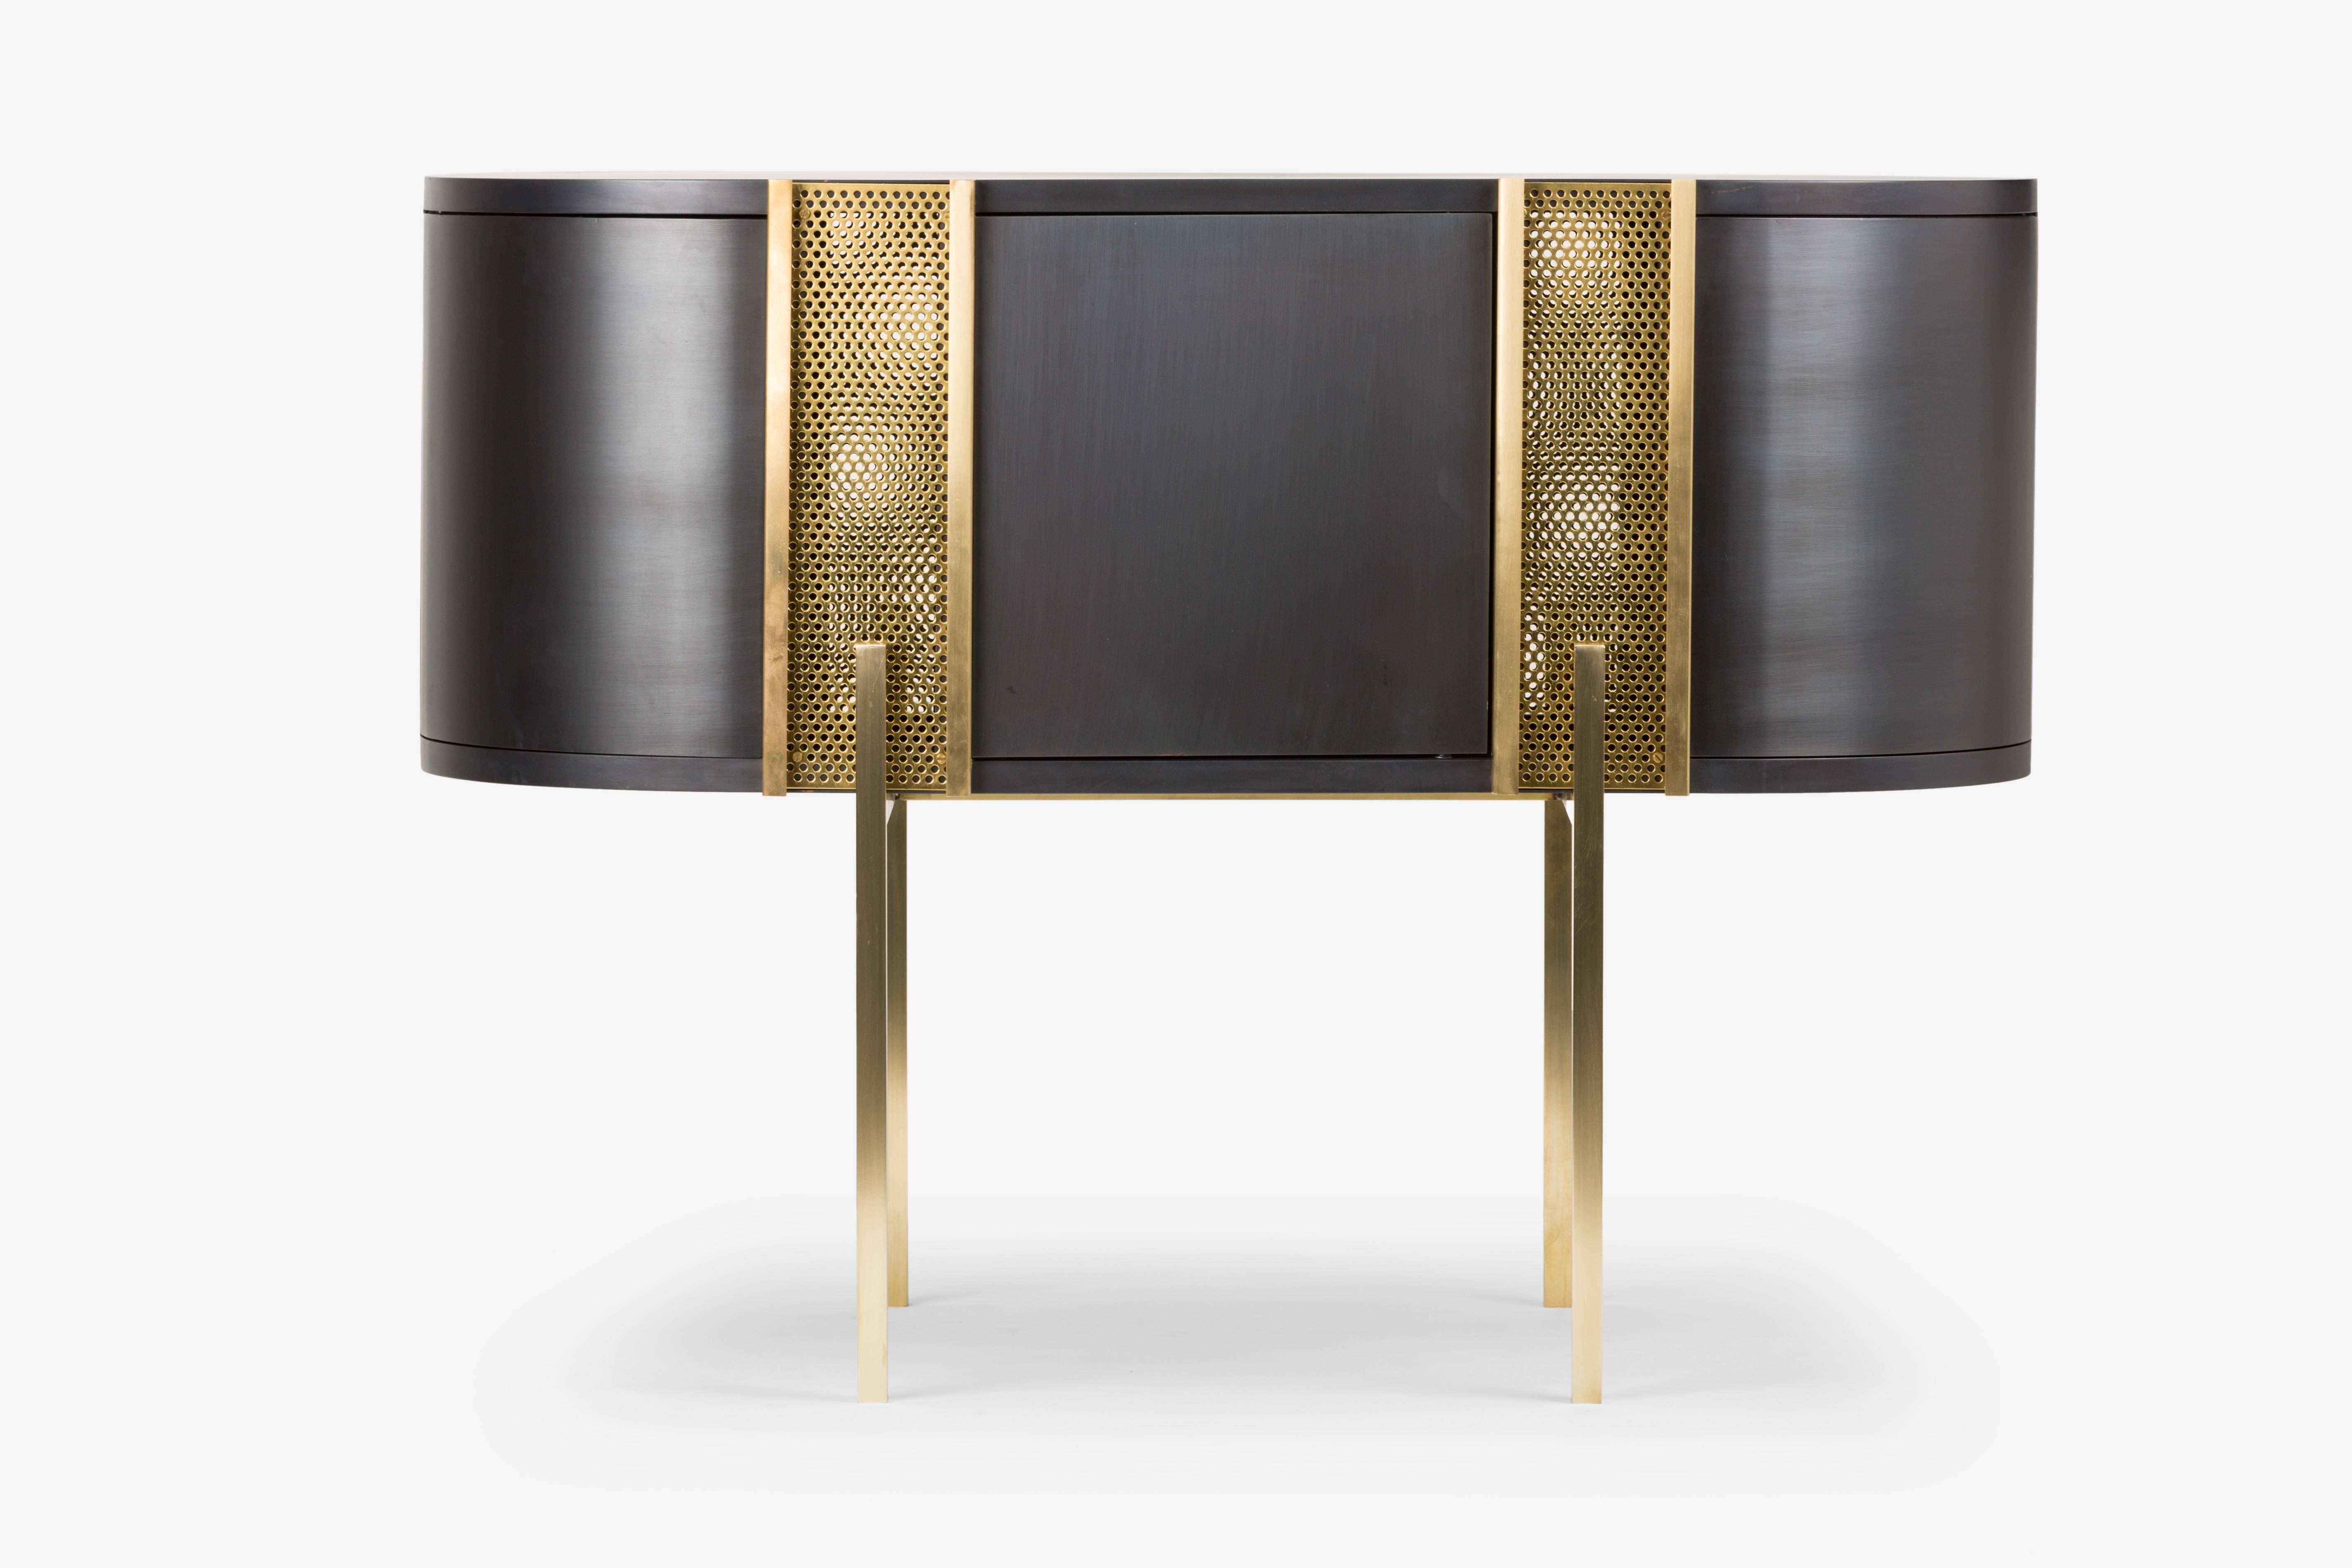 Be-Lieve
Die von Lorenza Bozzoli entworfene umschließende Konsole ist ein zeitloses Möbelstück, das gleichzeitig dekorativ und unverzichtbar ist. Die Linie ist kurvenreich und kompakt und der Stil erinnert an eine reiche und glorreiche